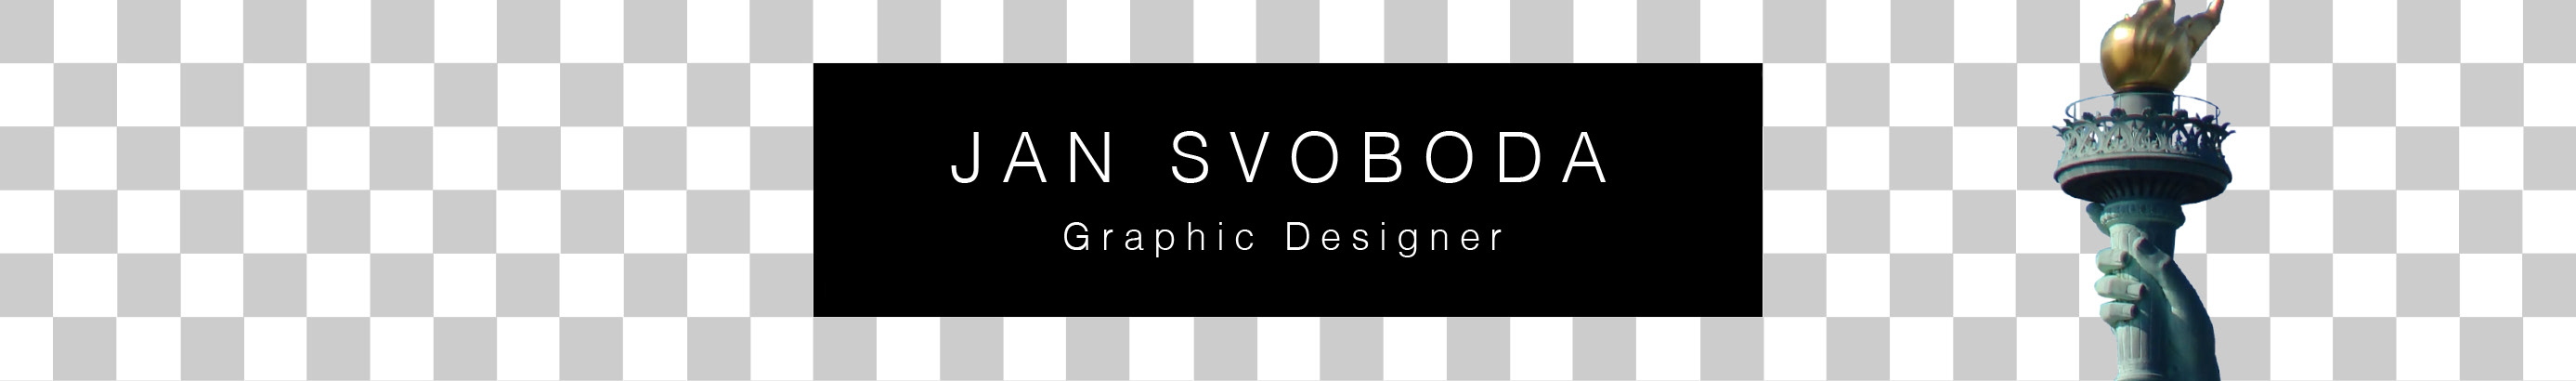 Баннер профиля Jan Svoboda